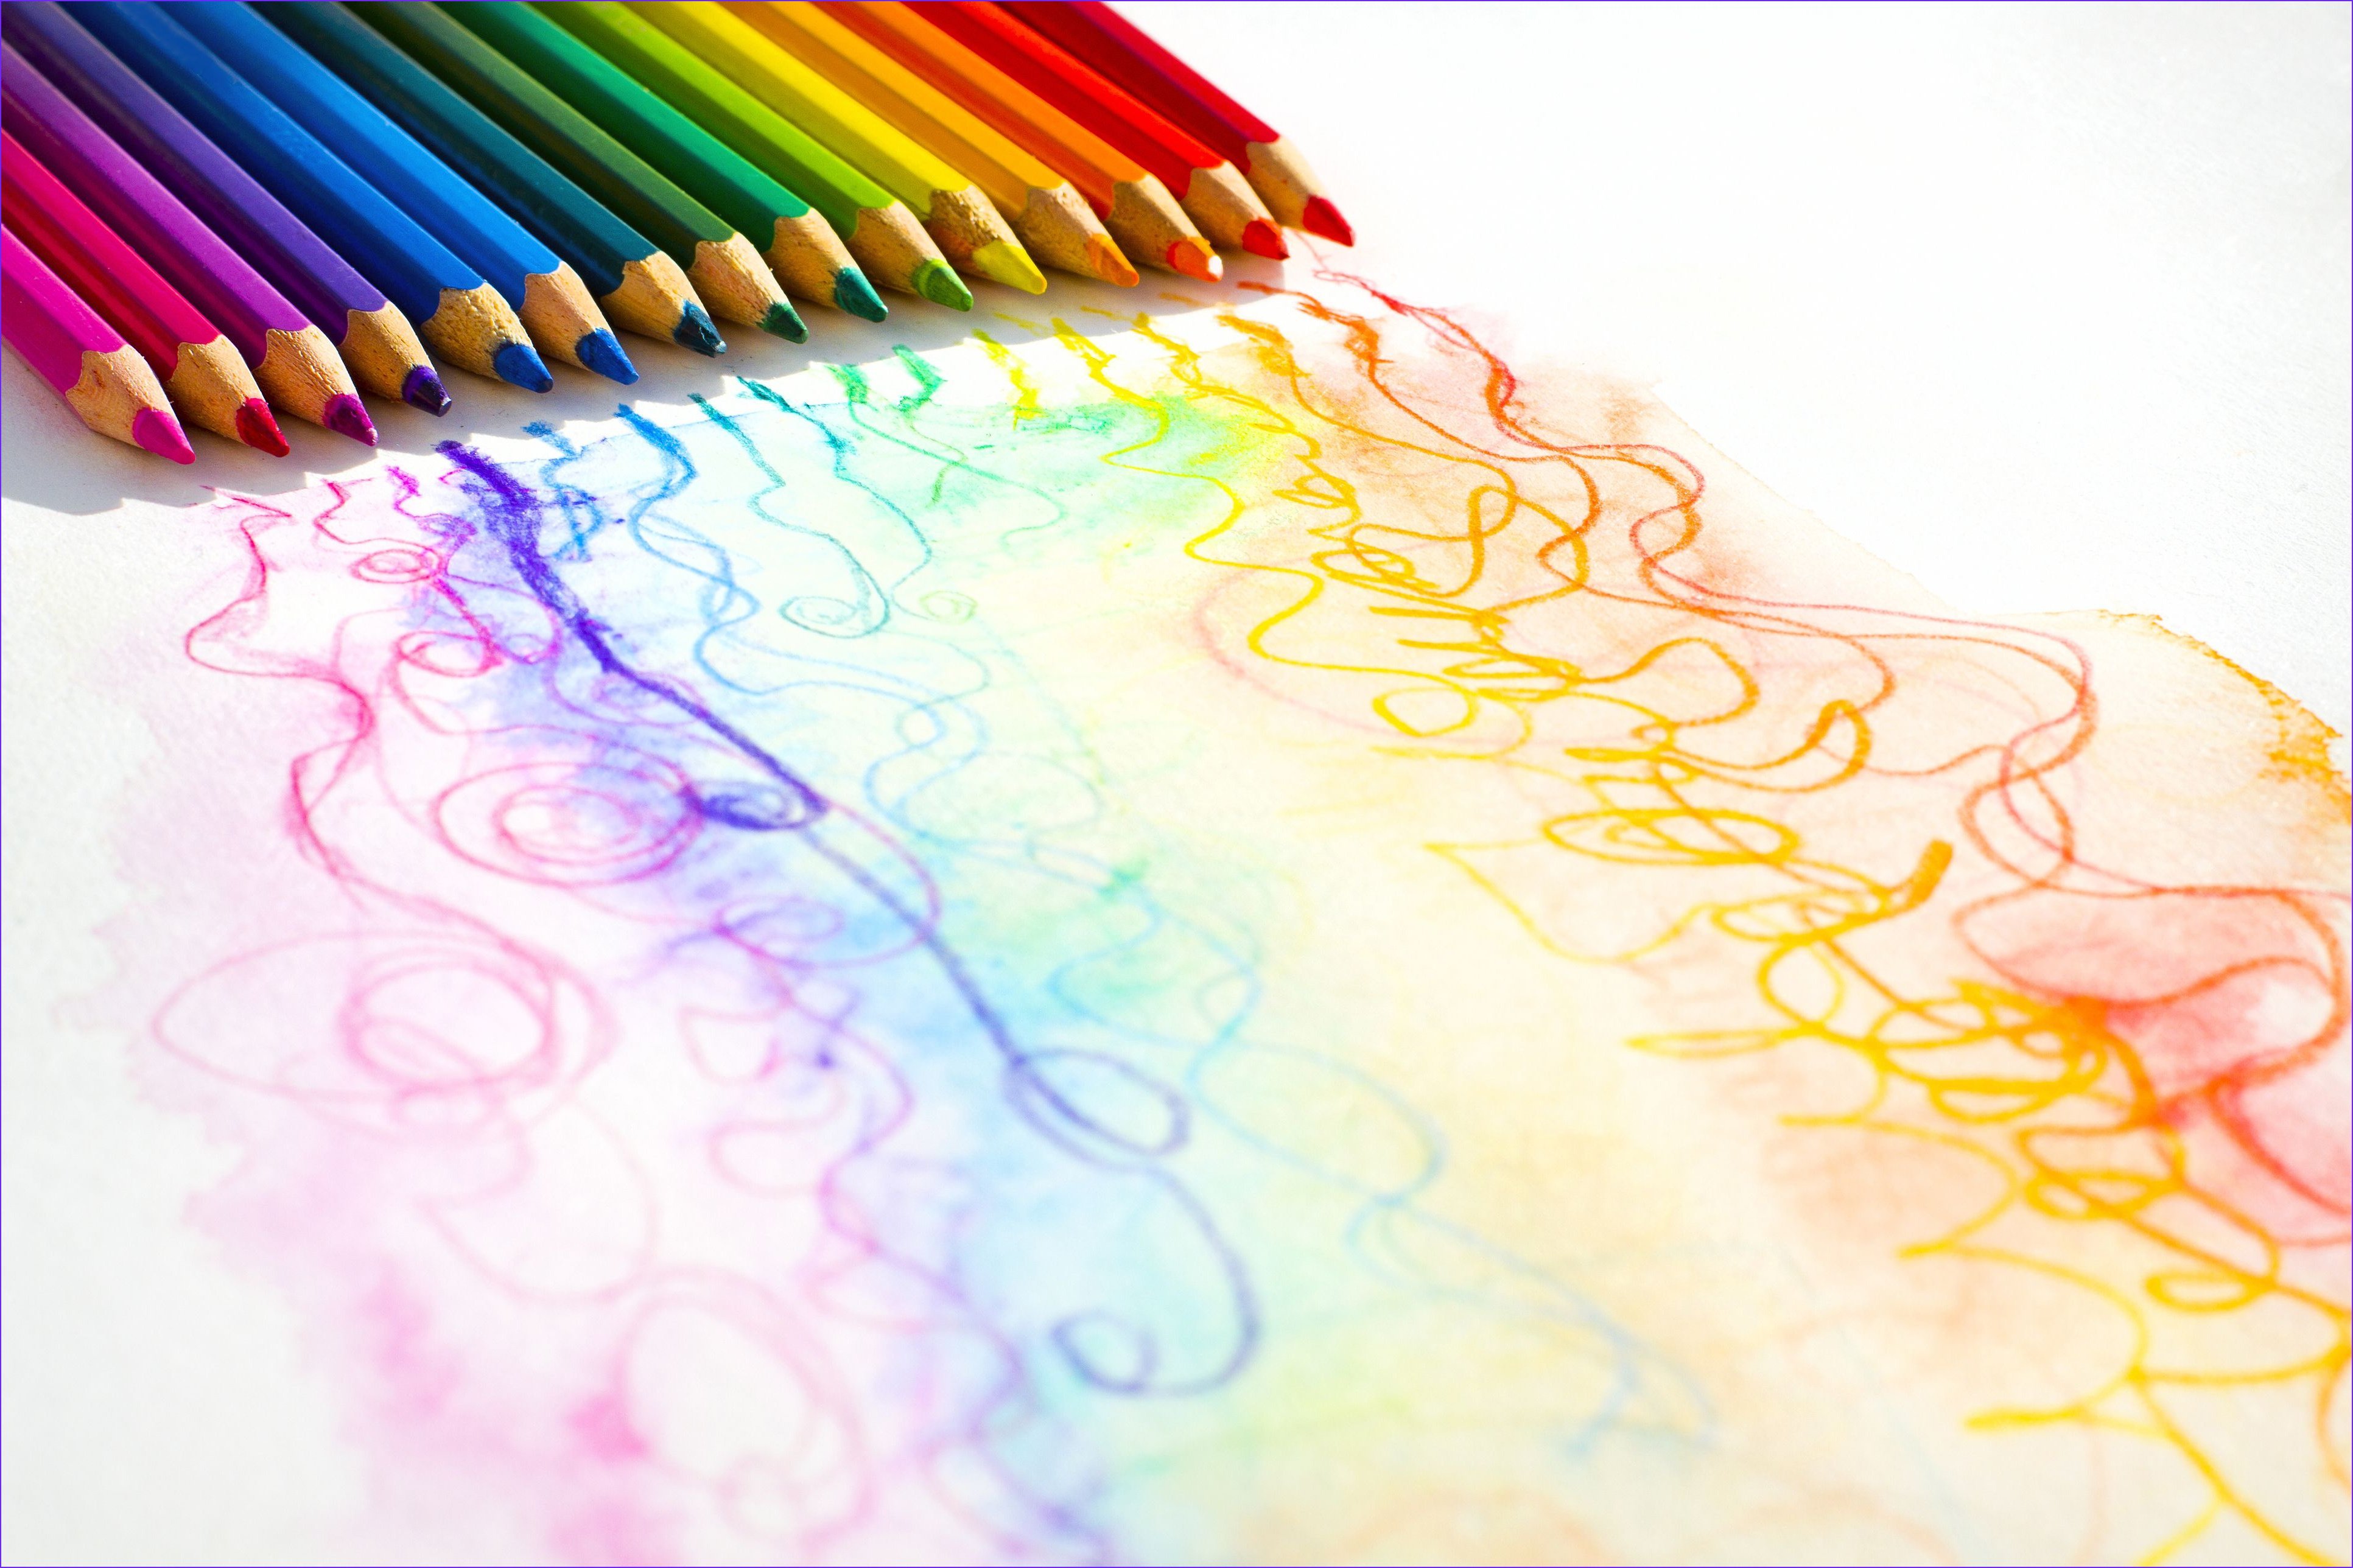 Color art drawing. Фон карандашом. Карандаши цветные. Рисование. Карандаши и краски.